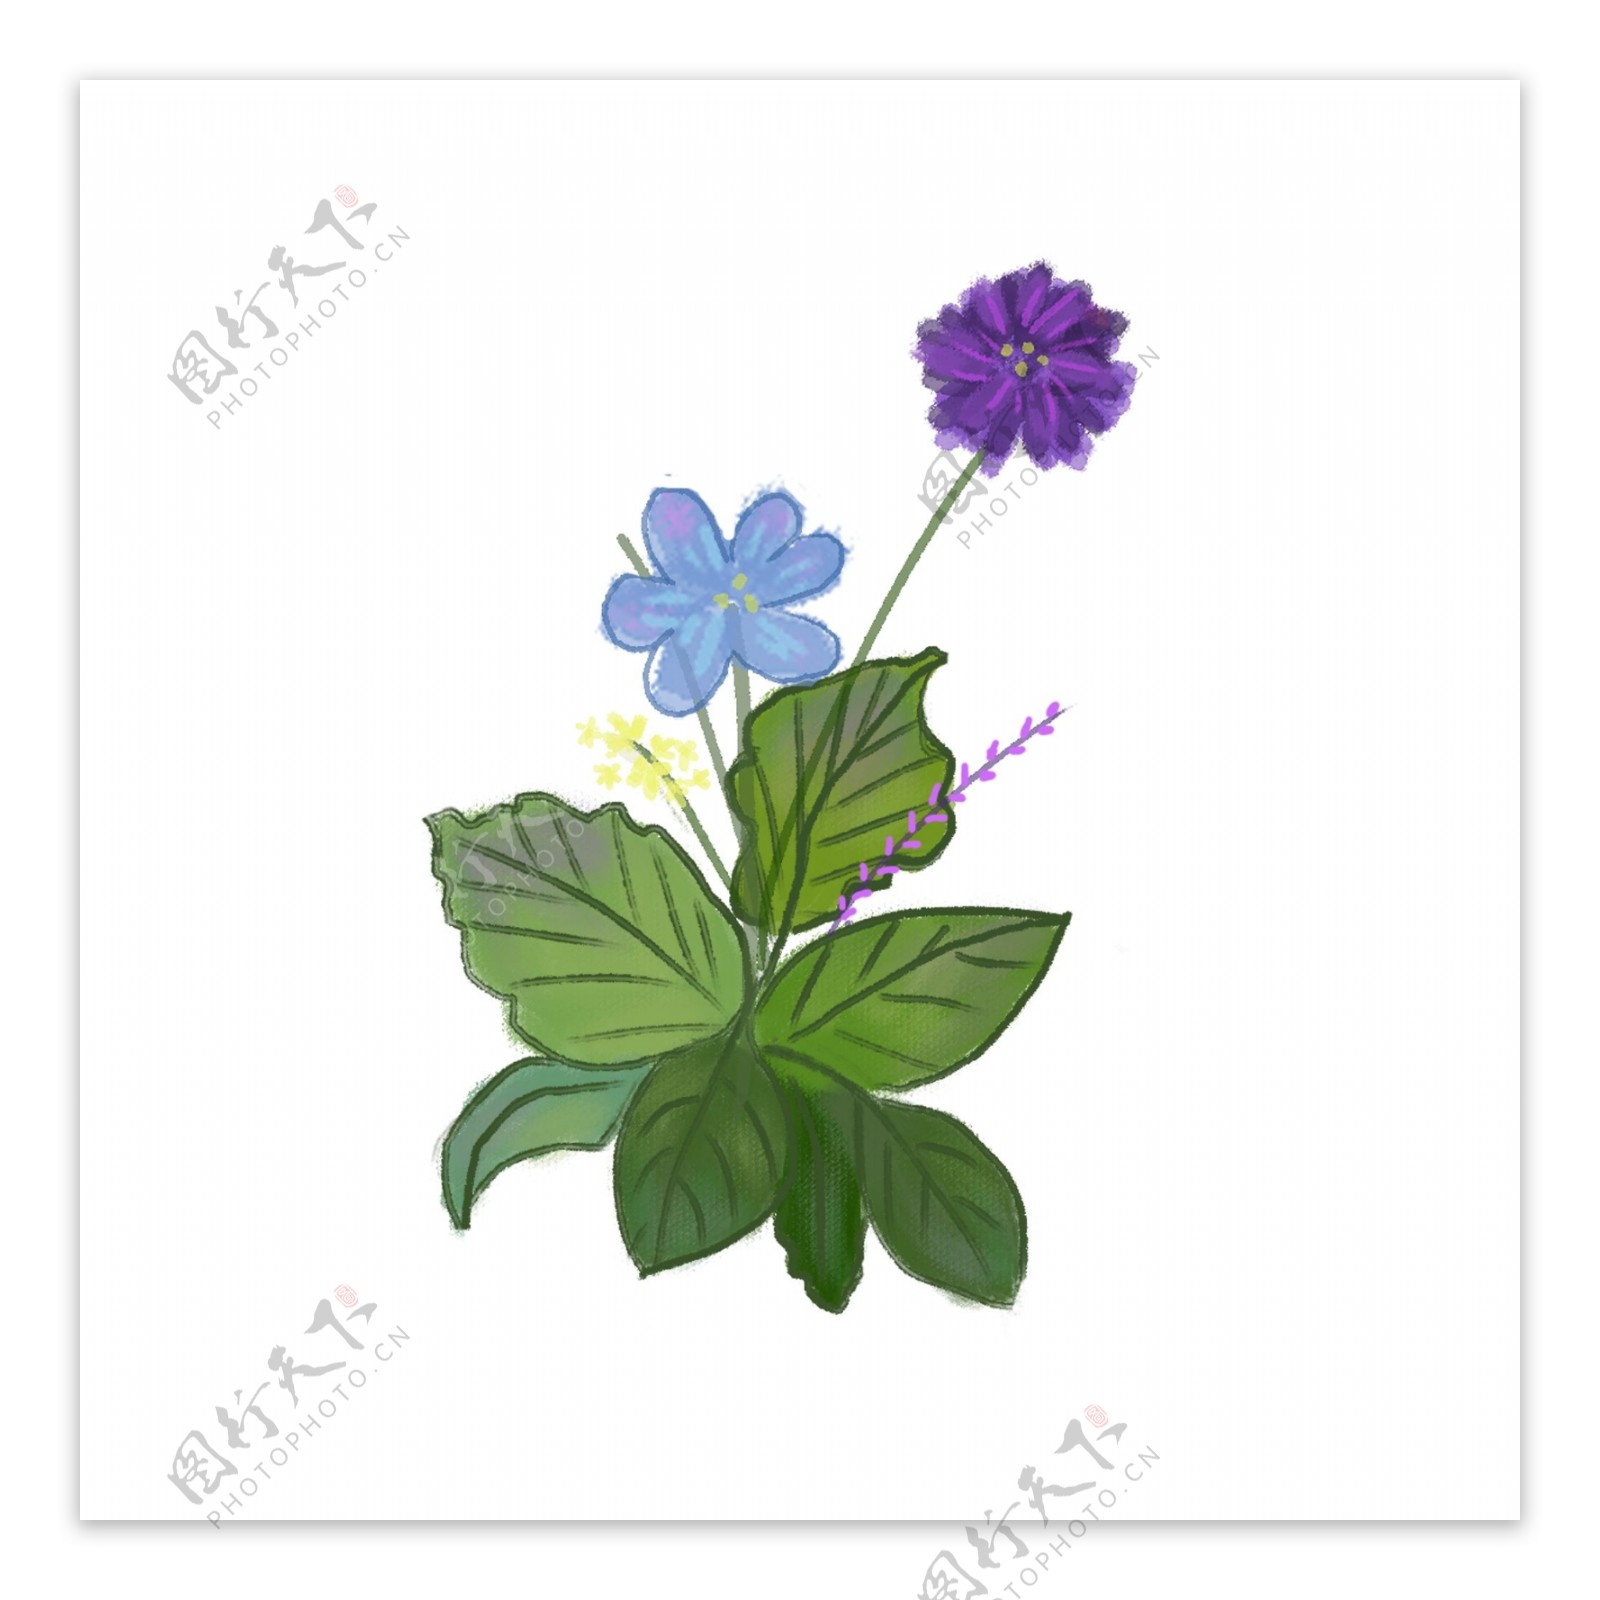 小清新的蓝紫色花朵